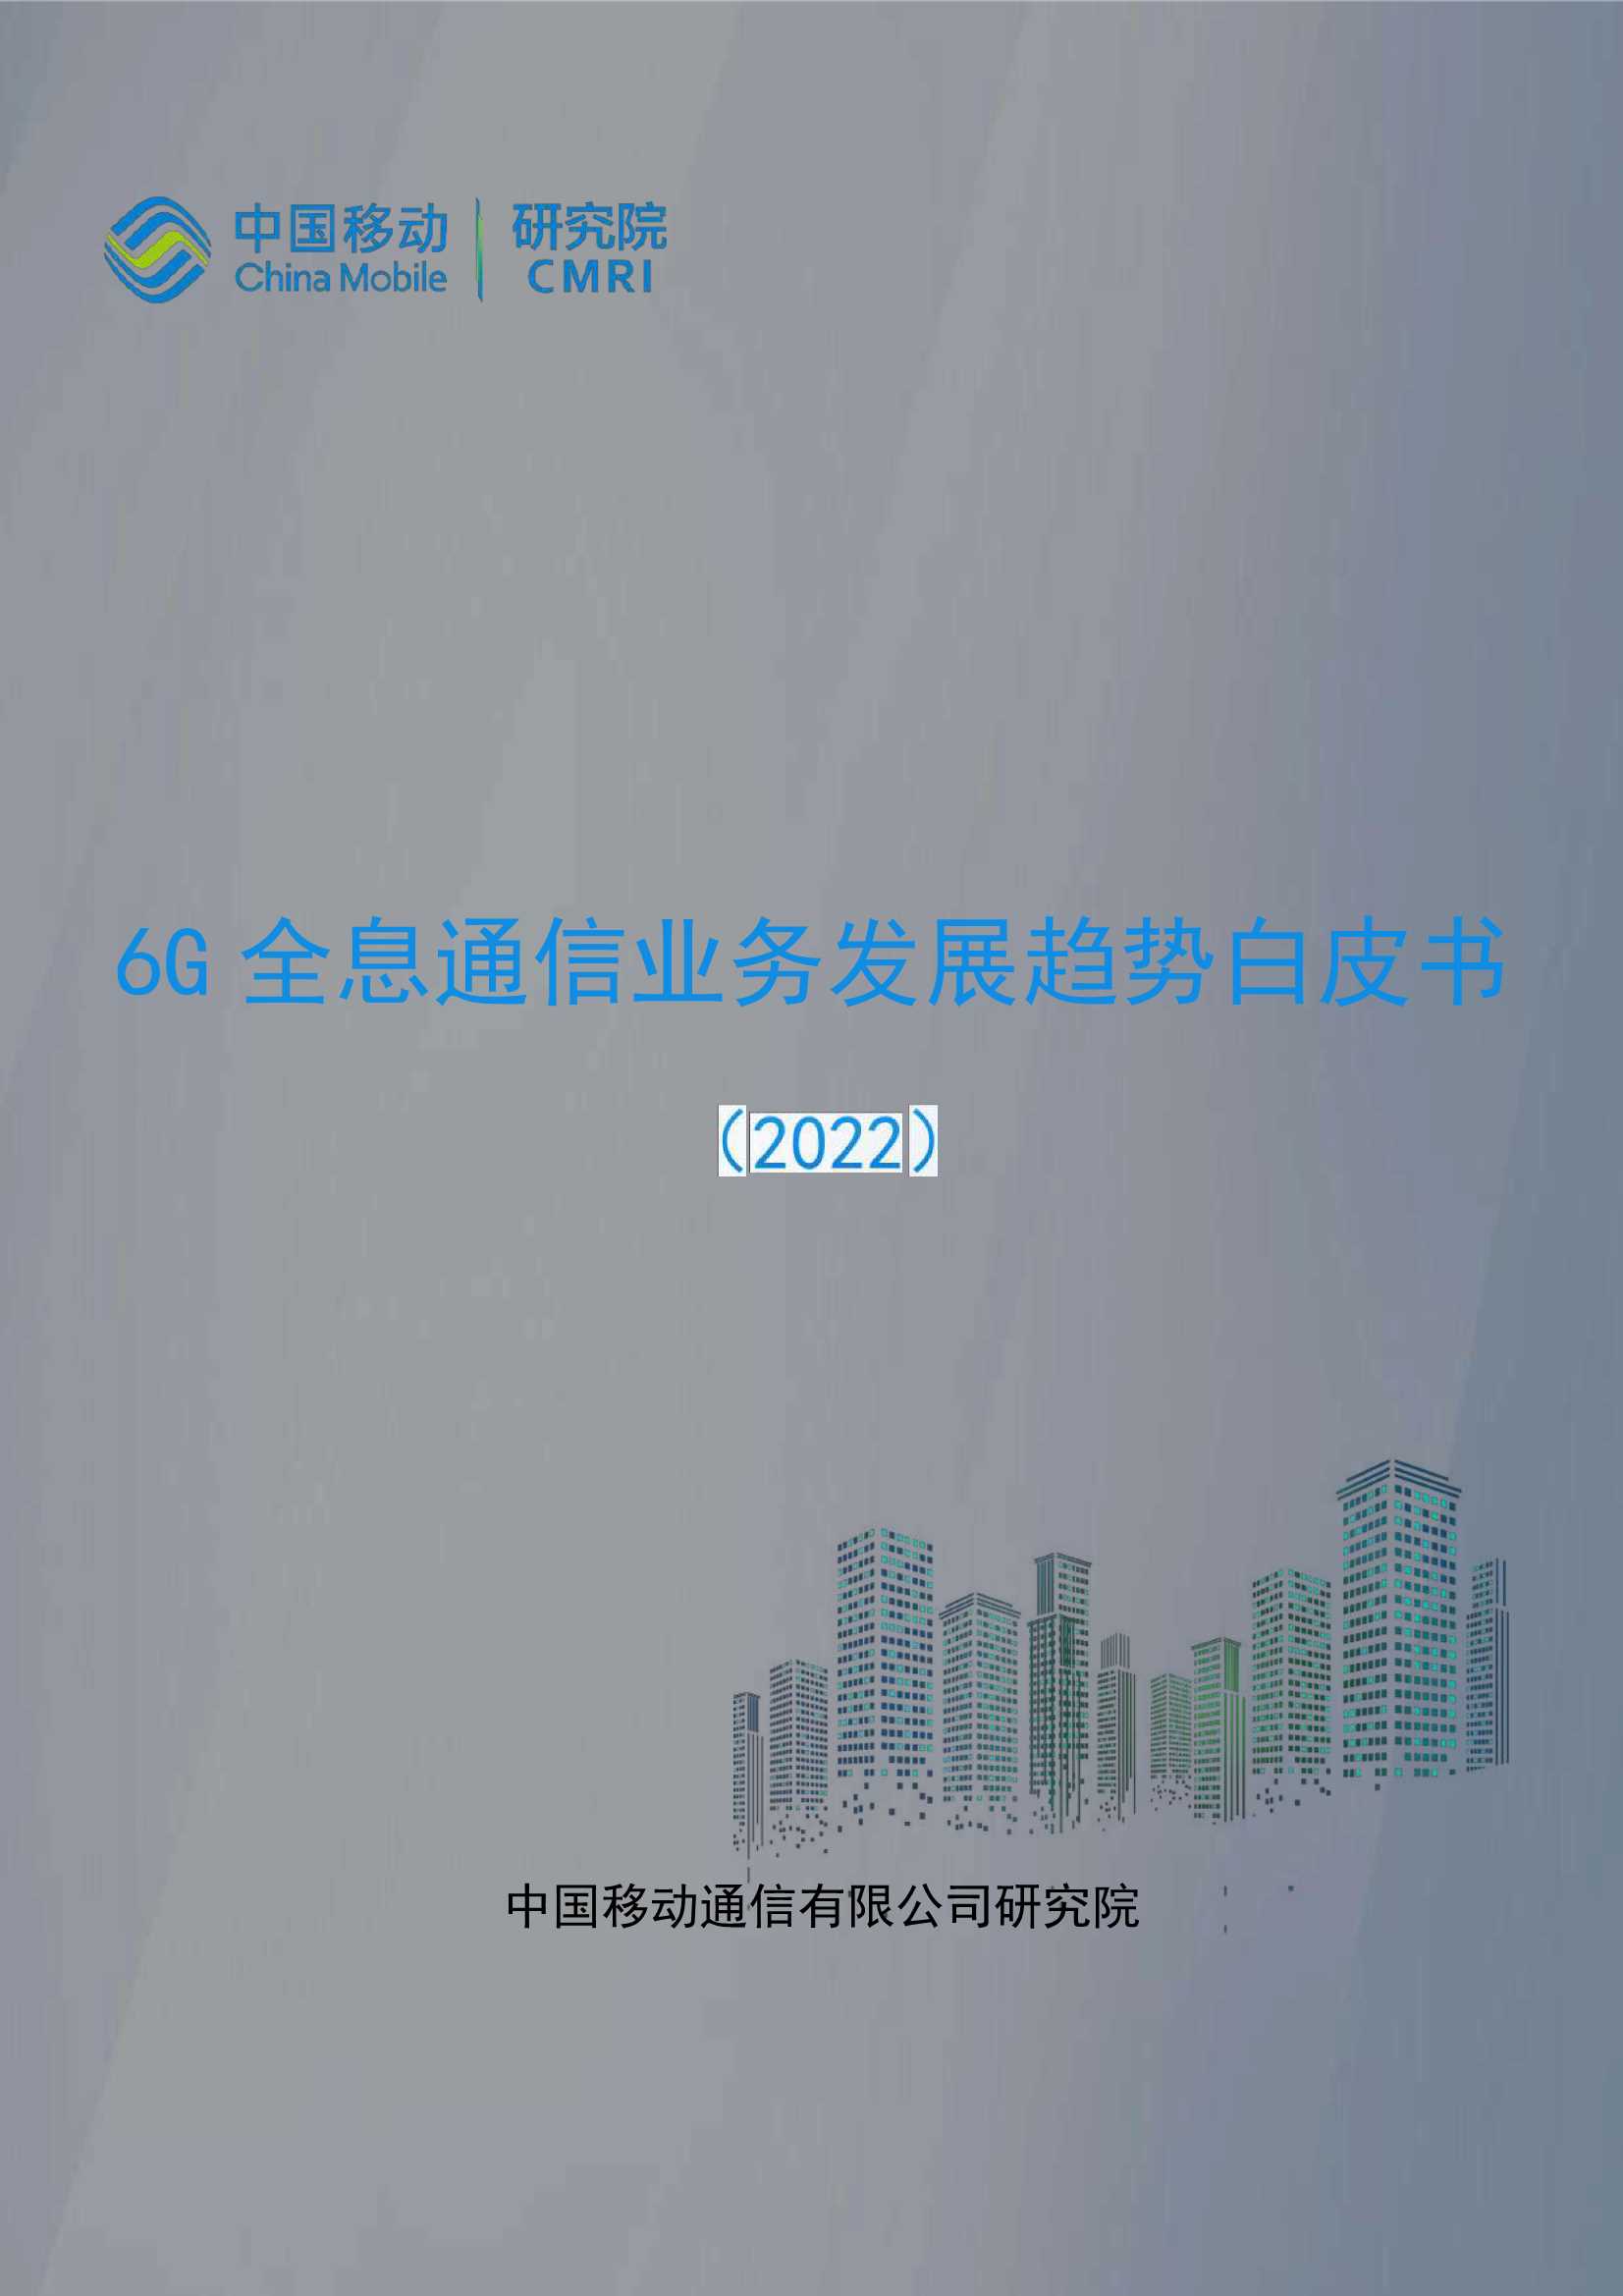 中国移动研究院-2022年6G全息通信业务发展趋势白皮书-2022.03-37页